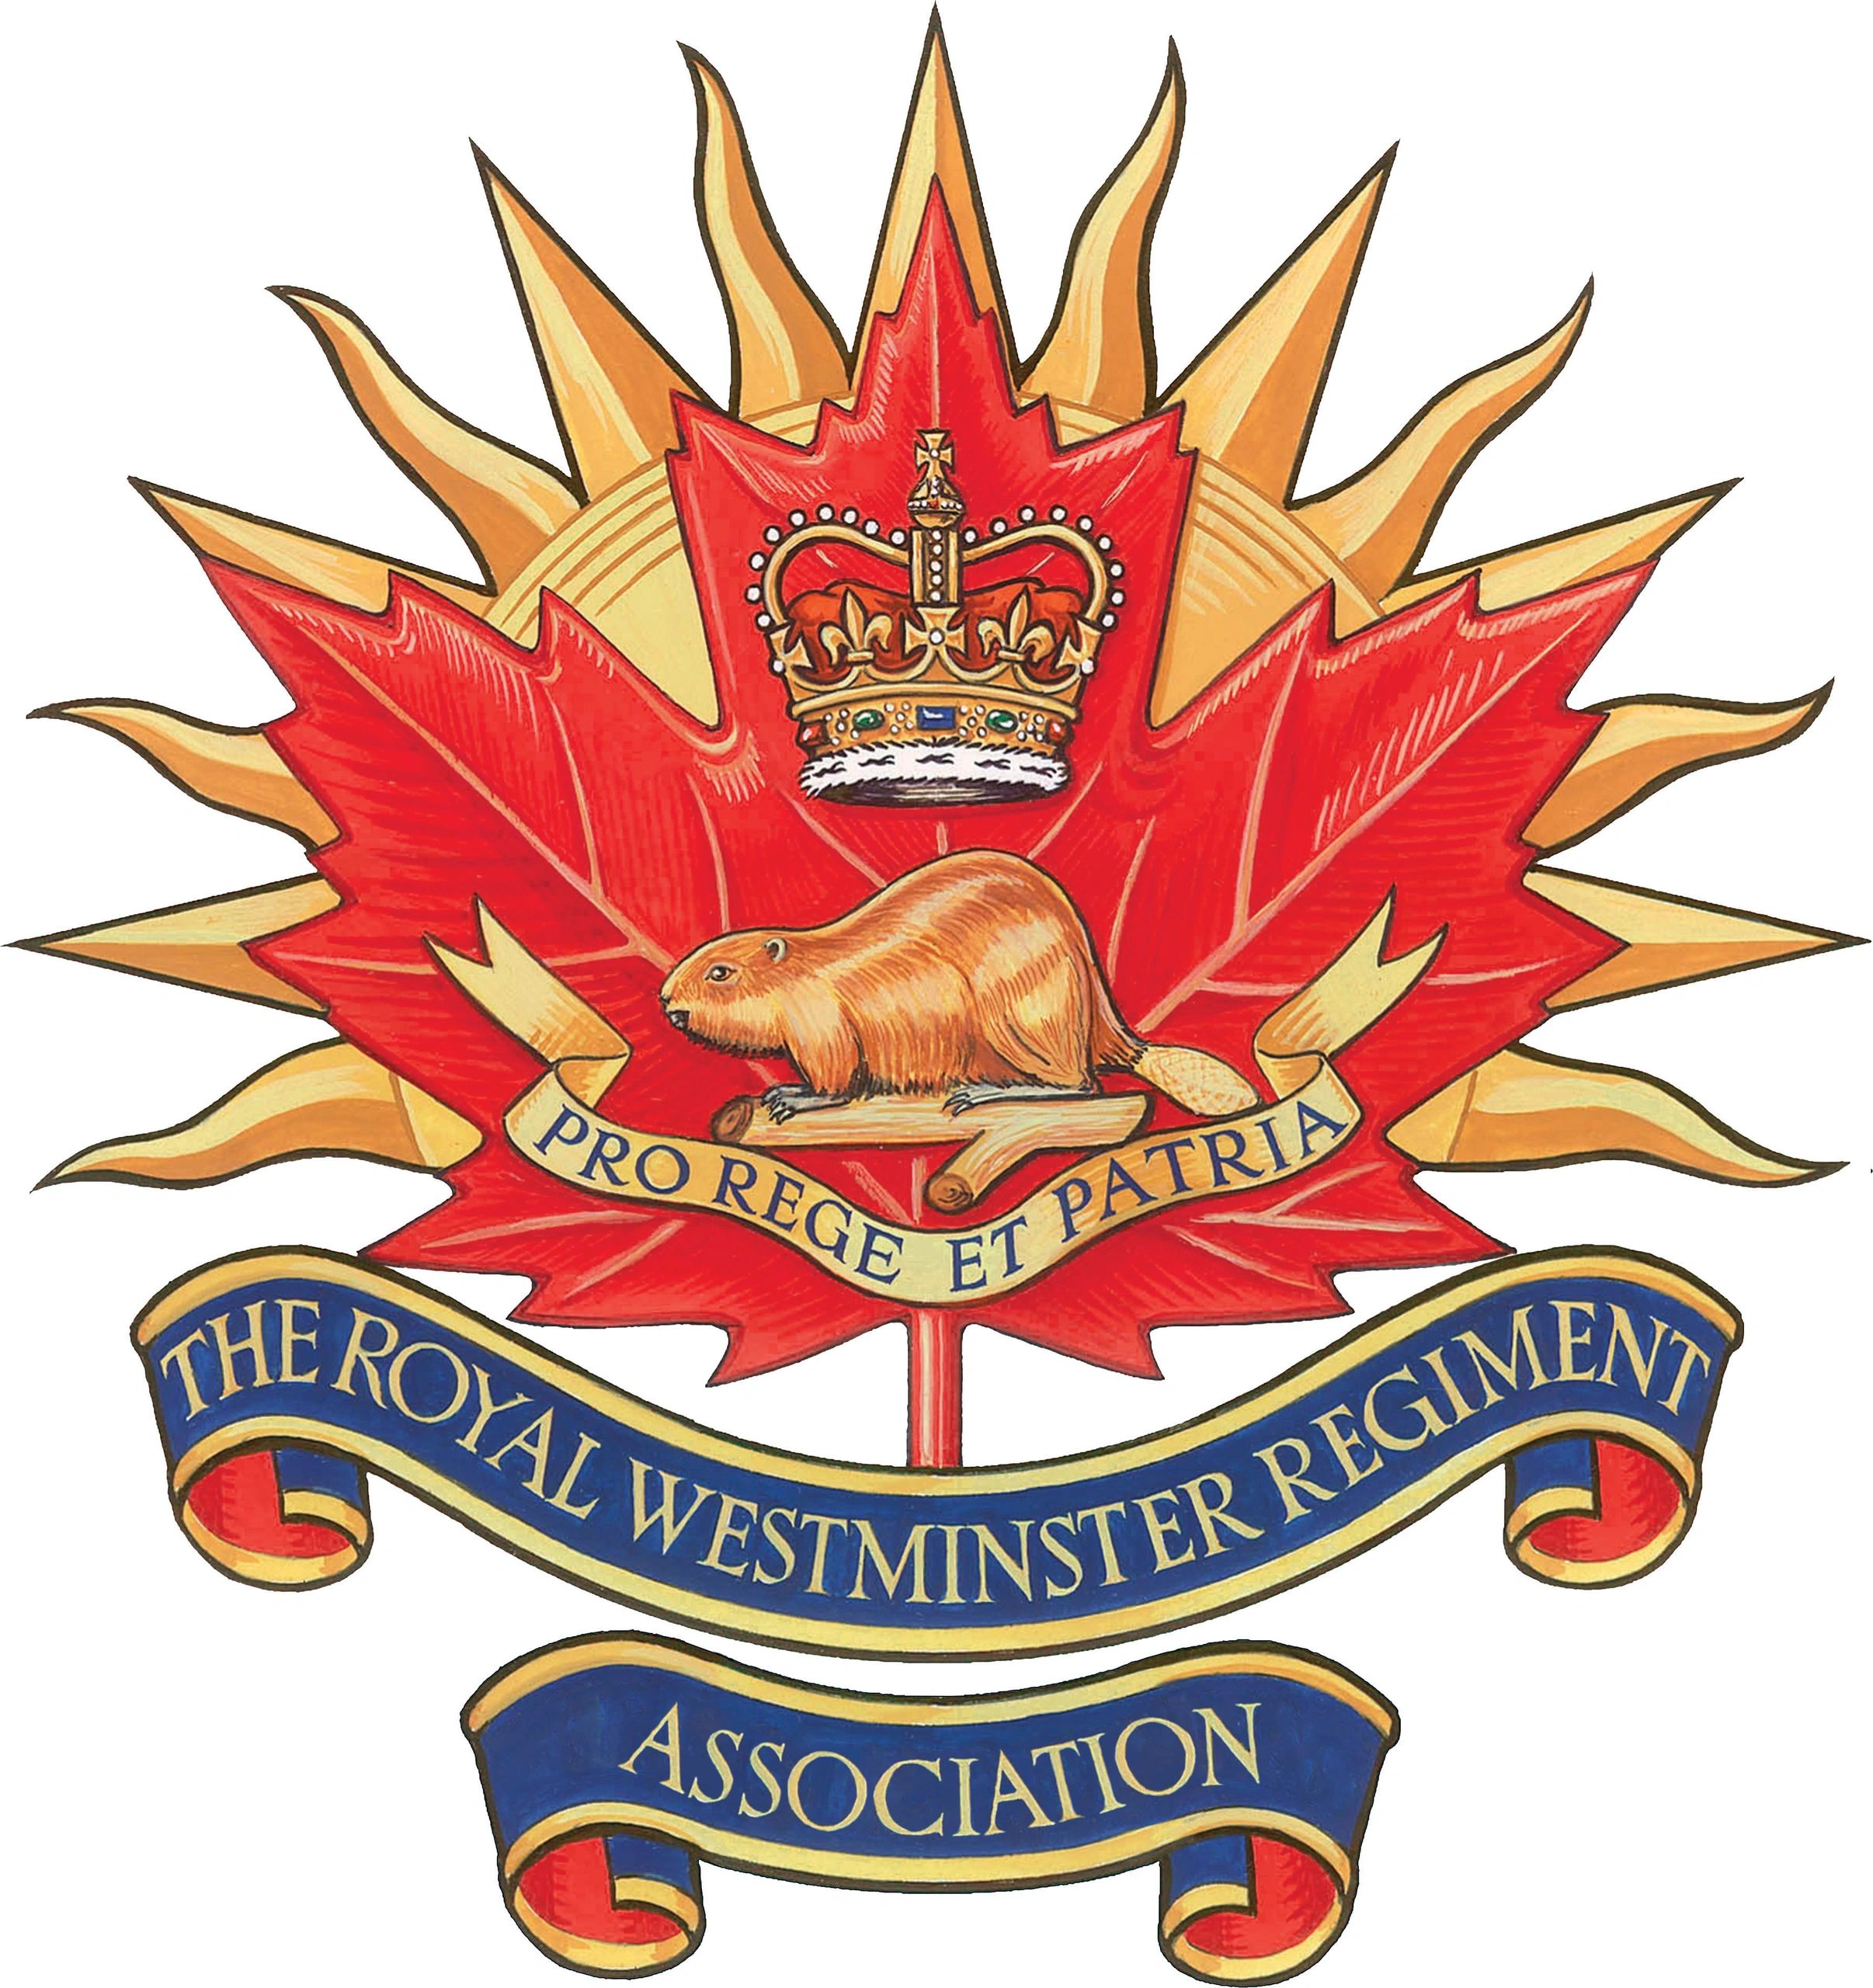 Royal Westminster Regiment Association